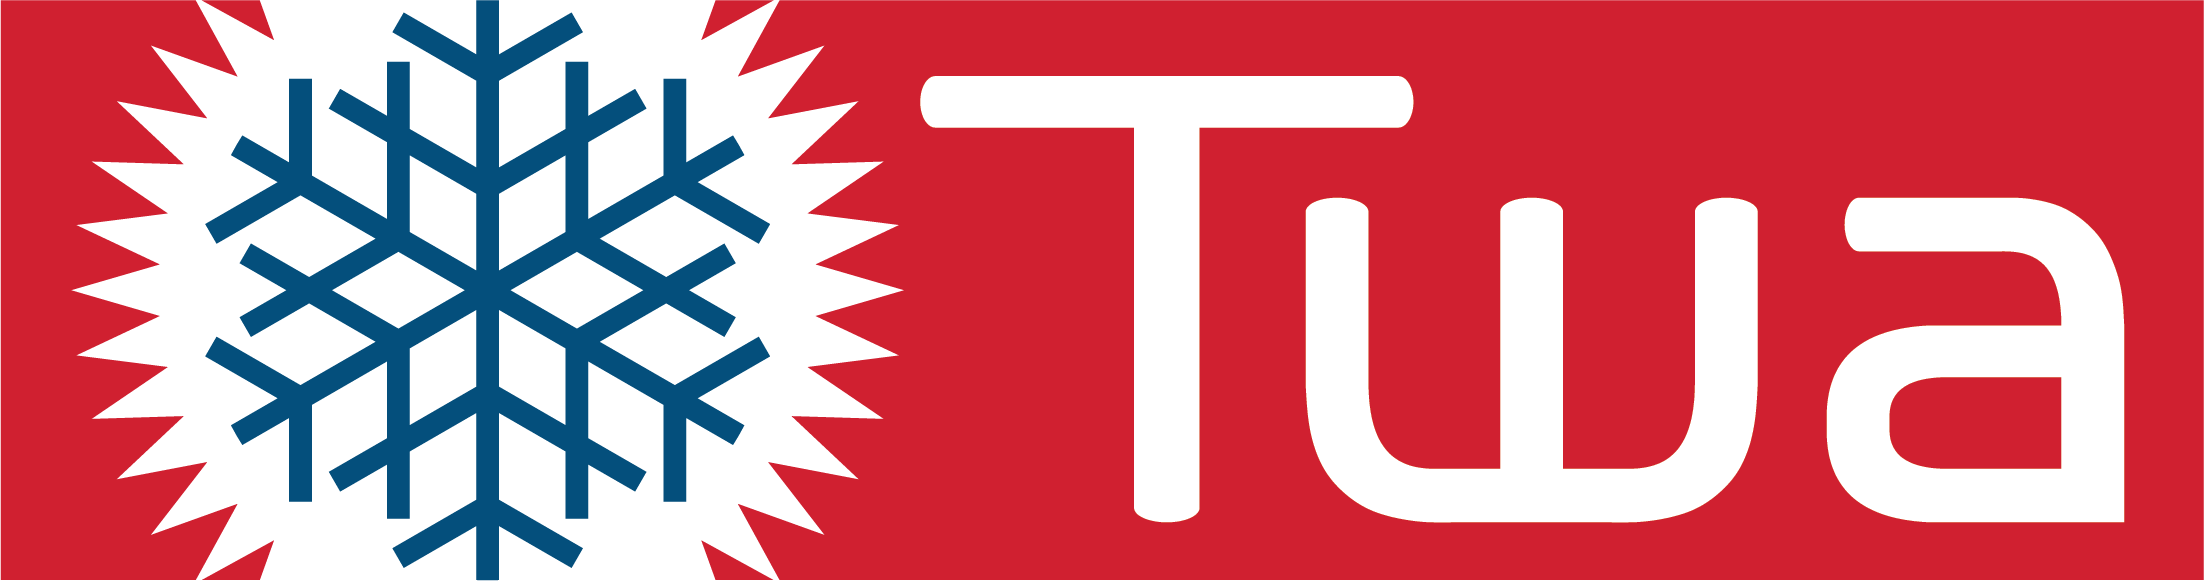 TWA